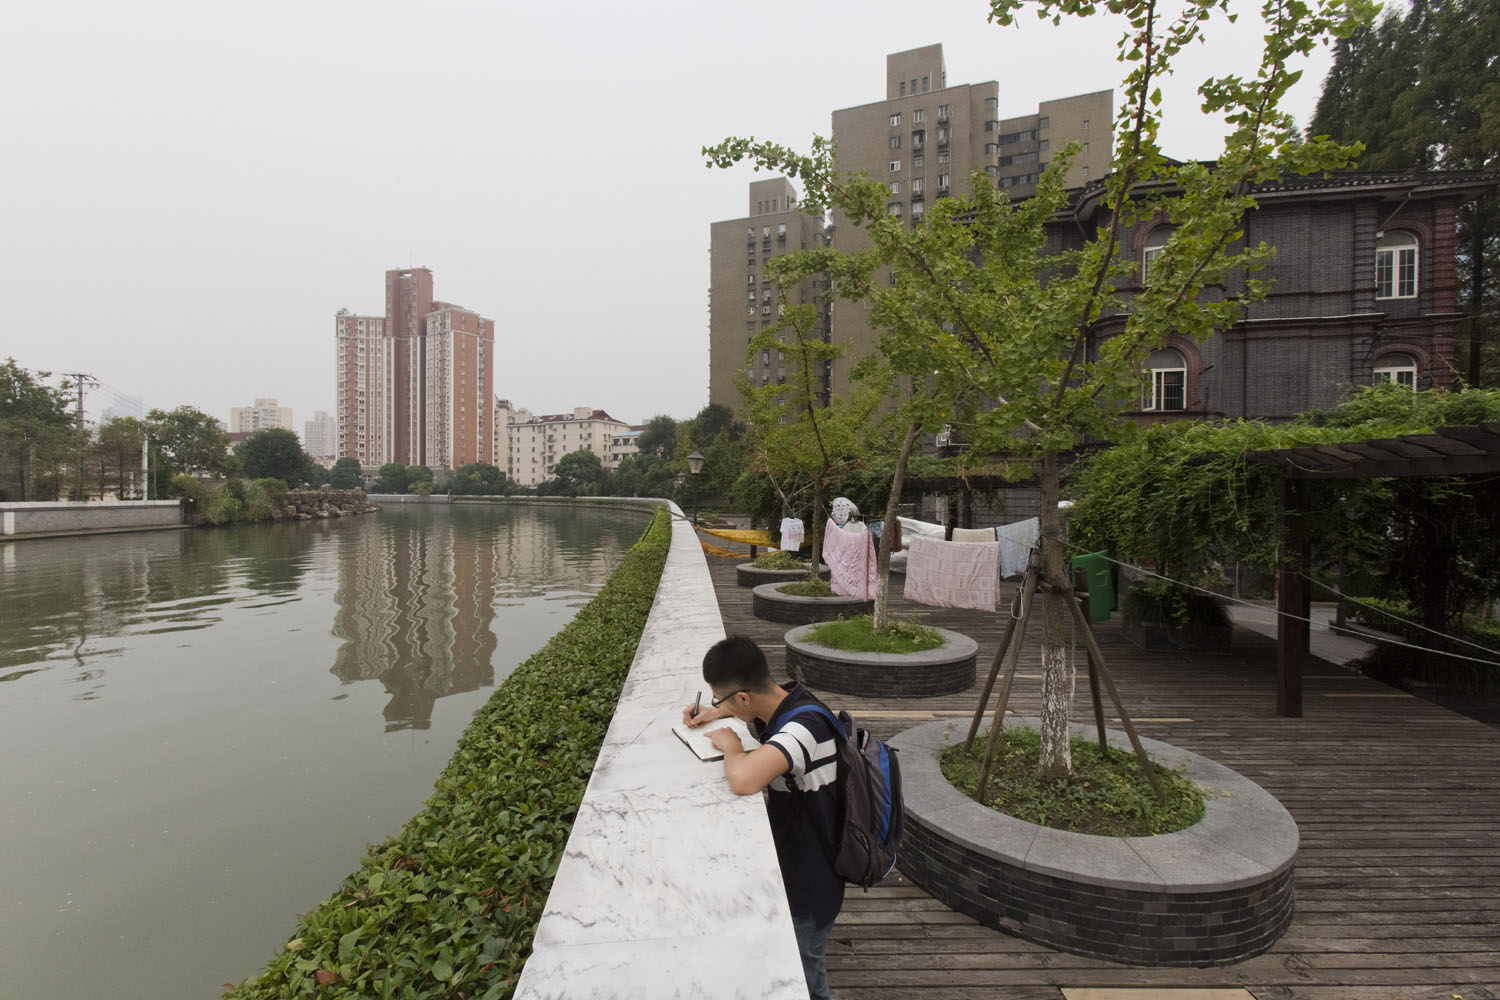 University student and Suzhou Creek. Shanghai, China. 2016.